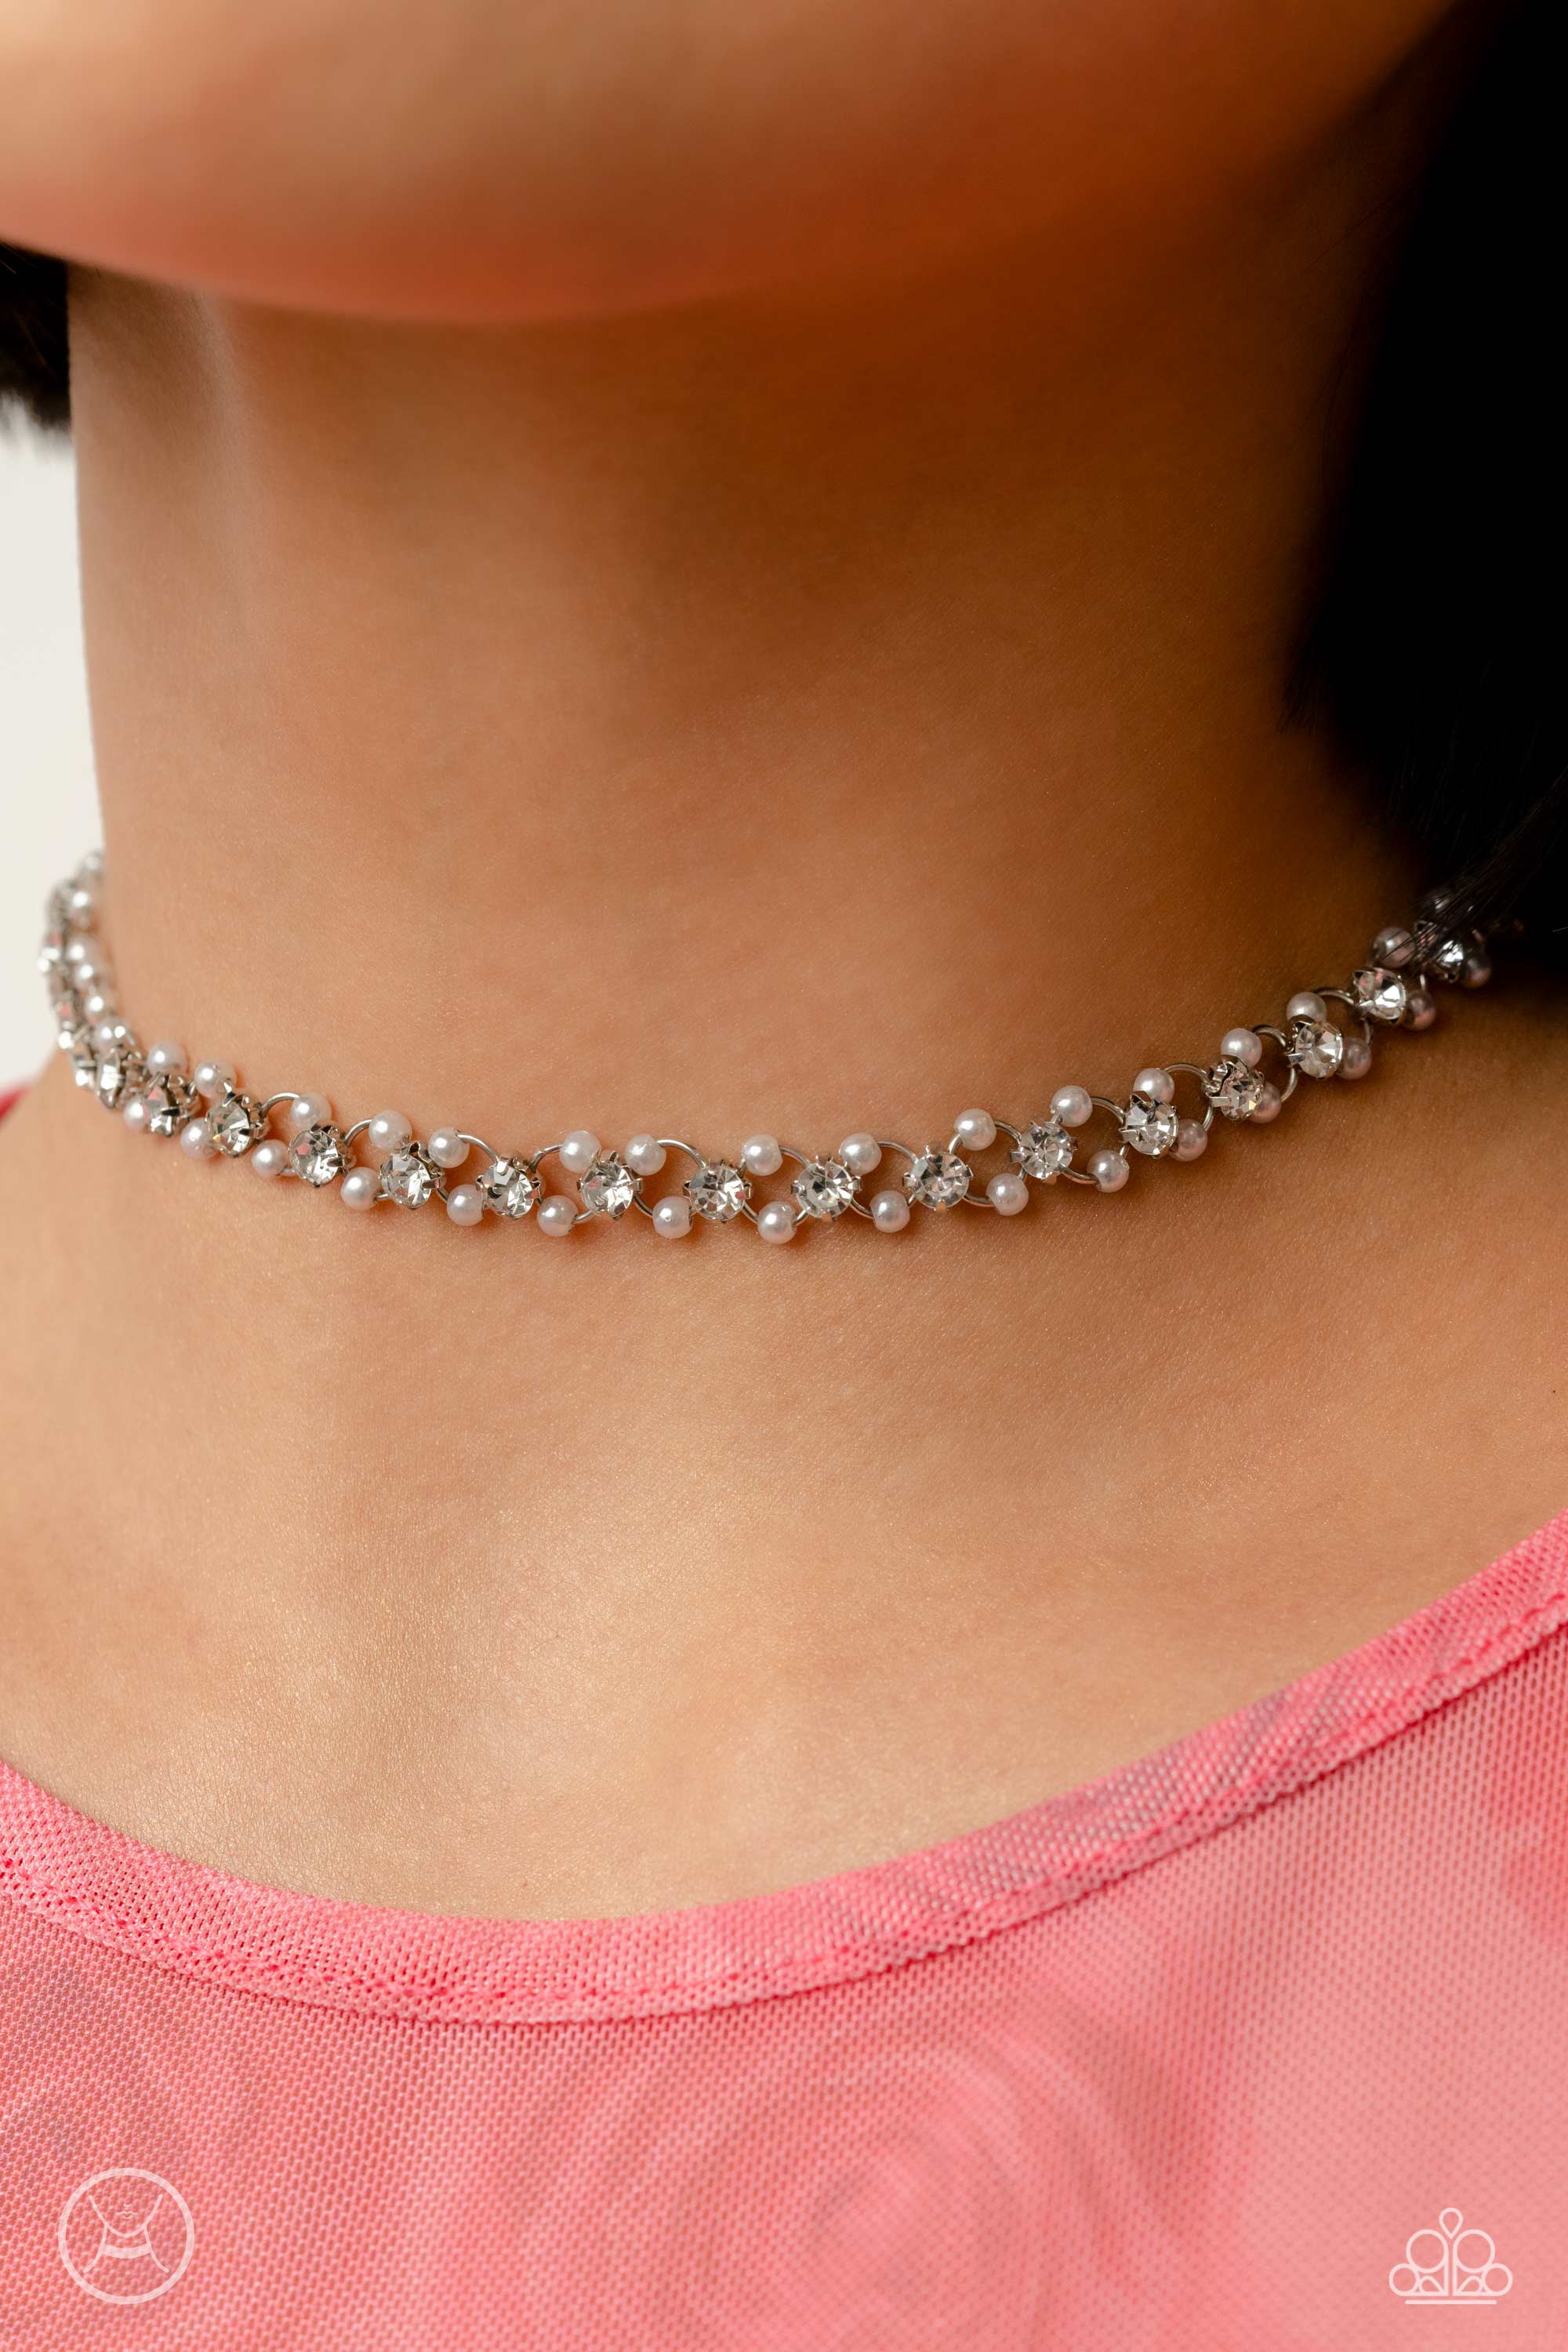 Classy Ball chain stone choker necklace set